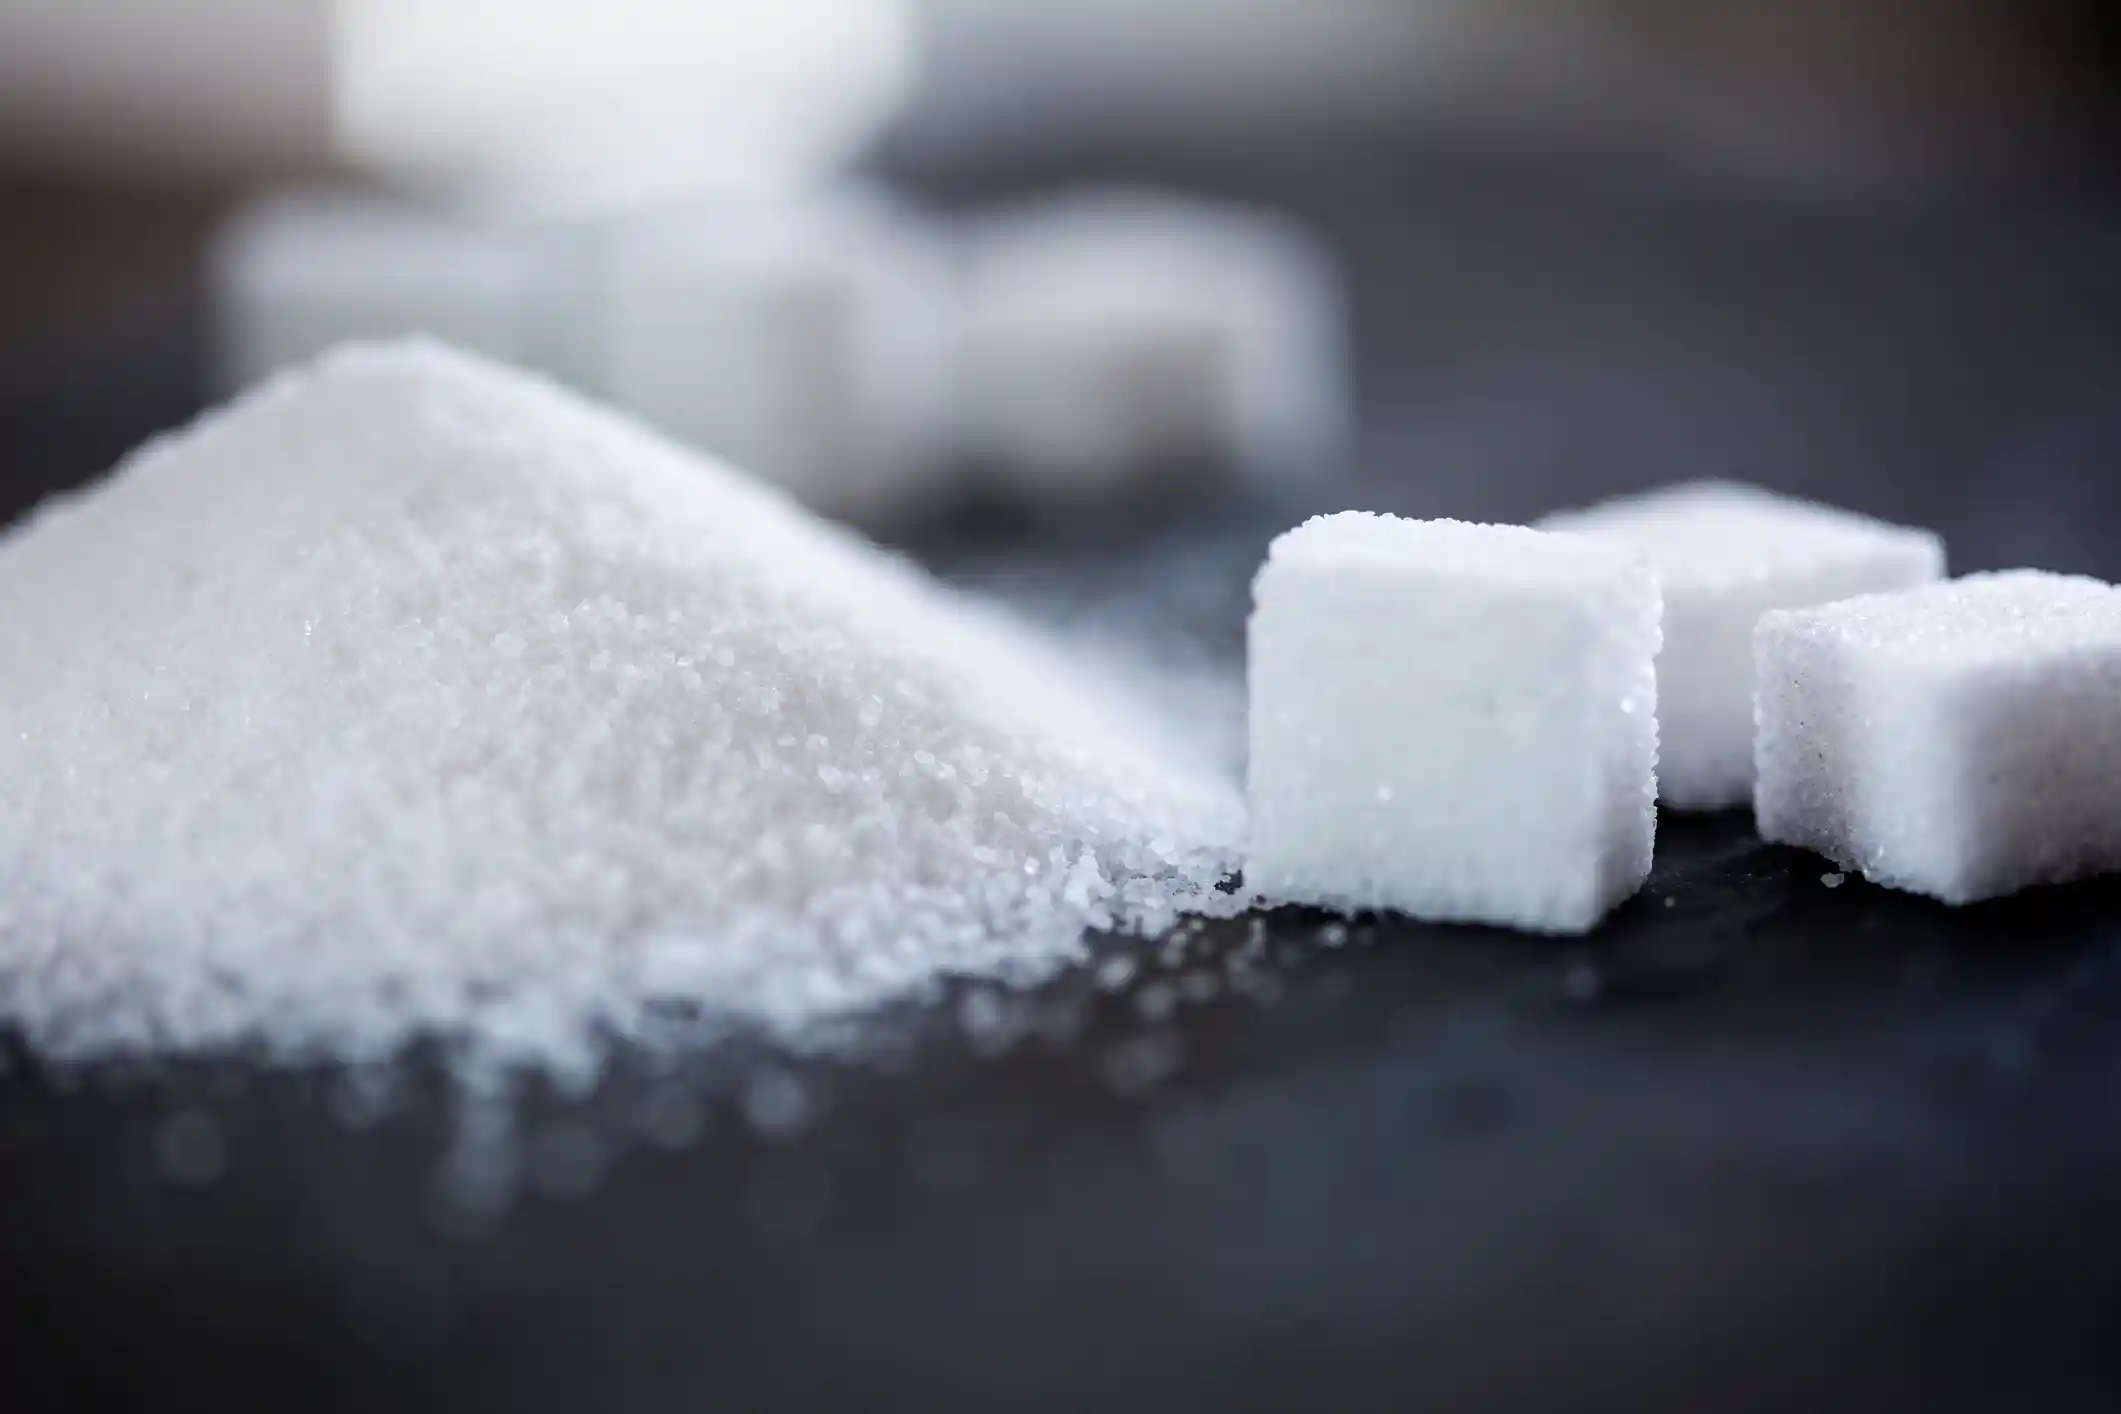  Запрет на экспорт сахара одобрила Таможенная подкомиссия